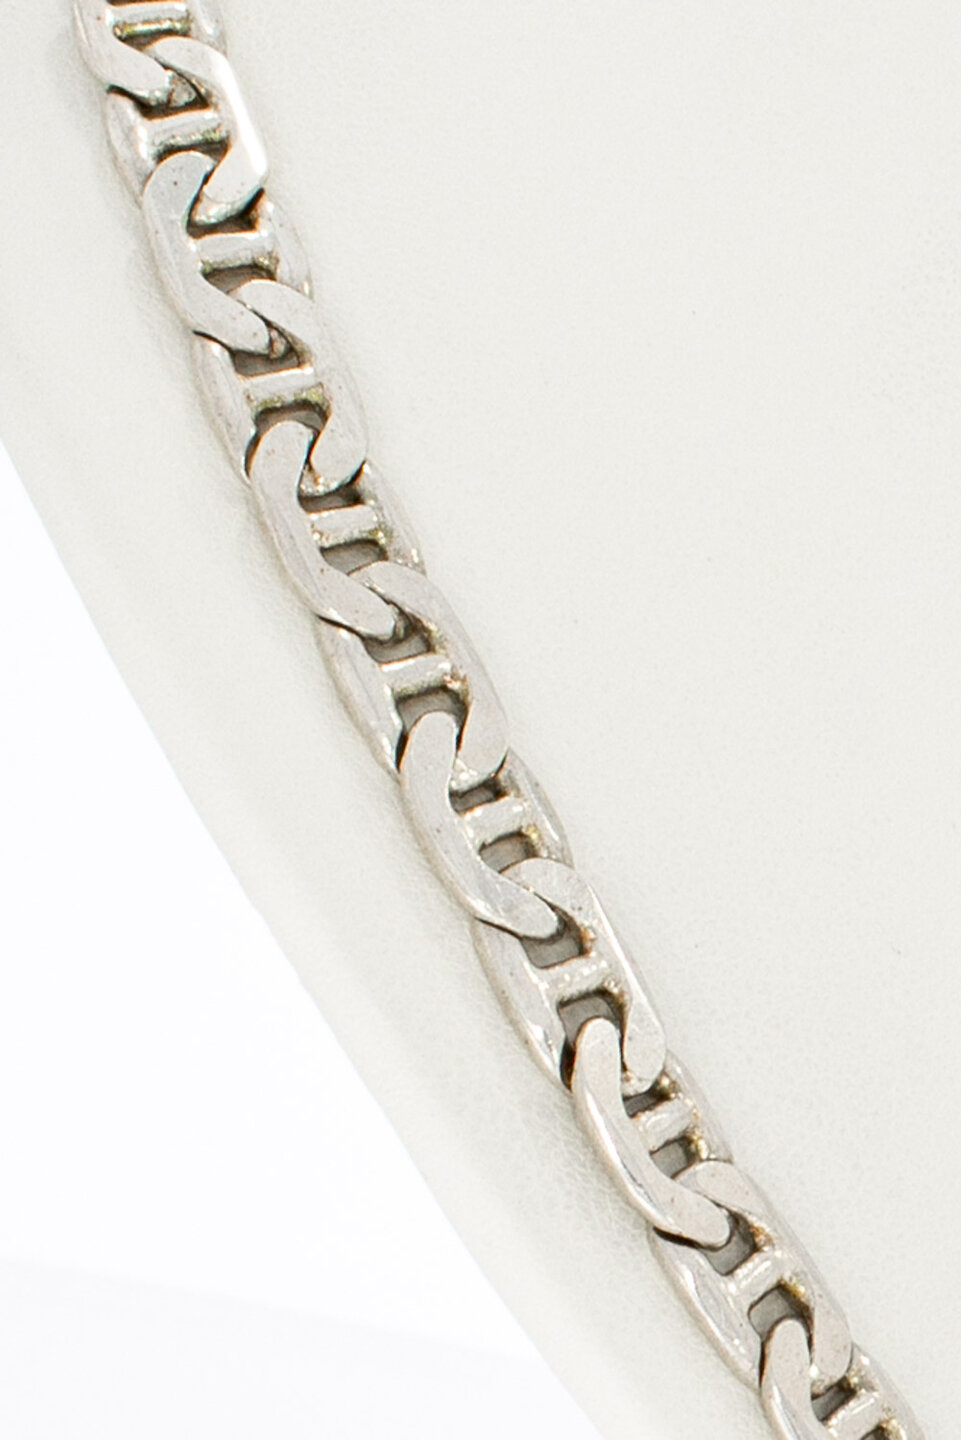 Silberne Anker Halskette (925) – 46 cm